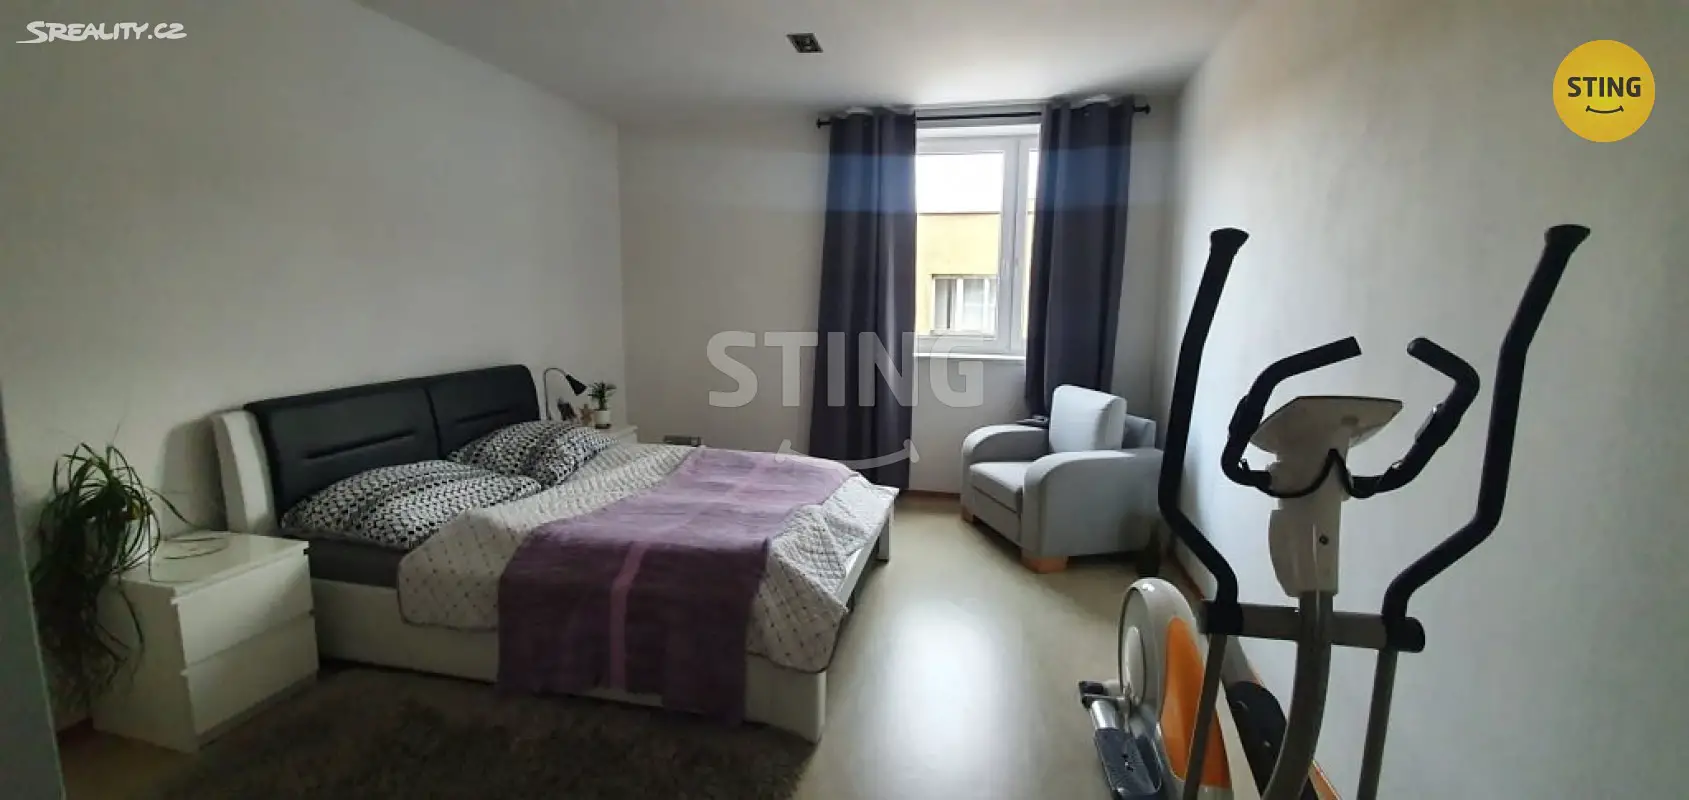 Prodej bytu 3+kk 80 m², Ostrava - Přívoz, okres Ostrava-město